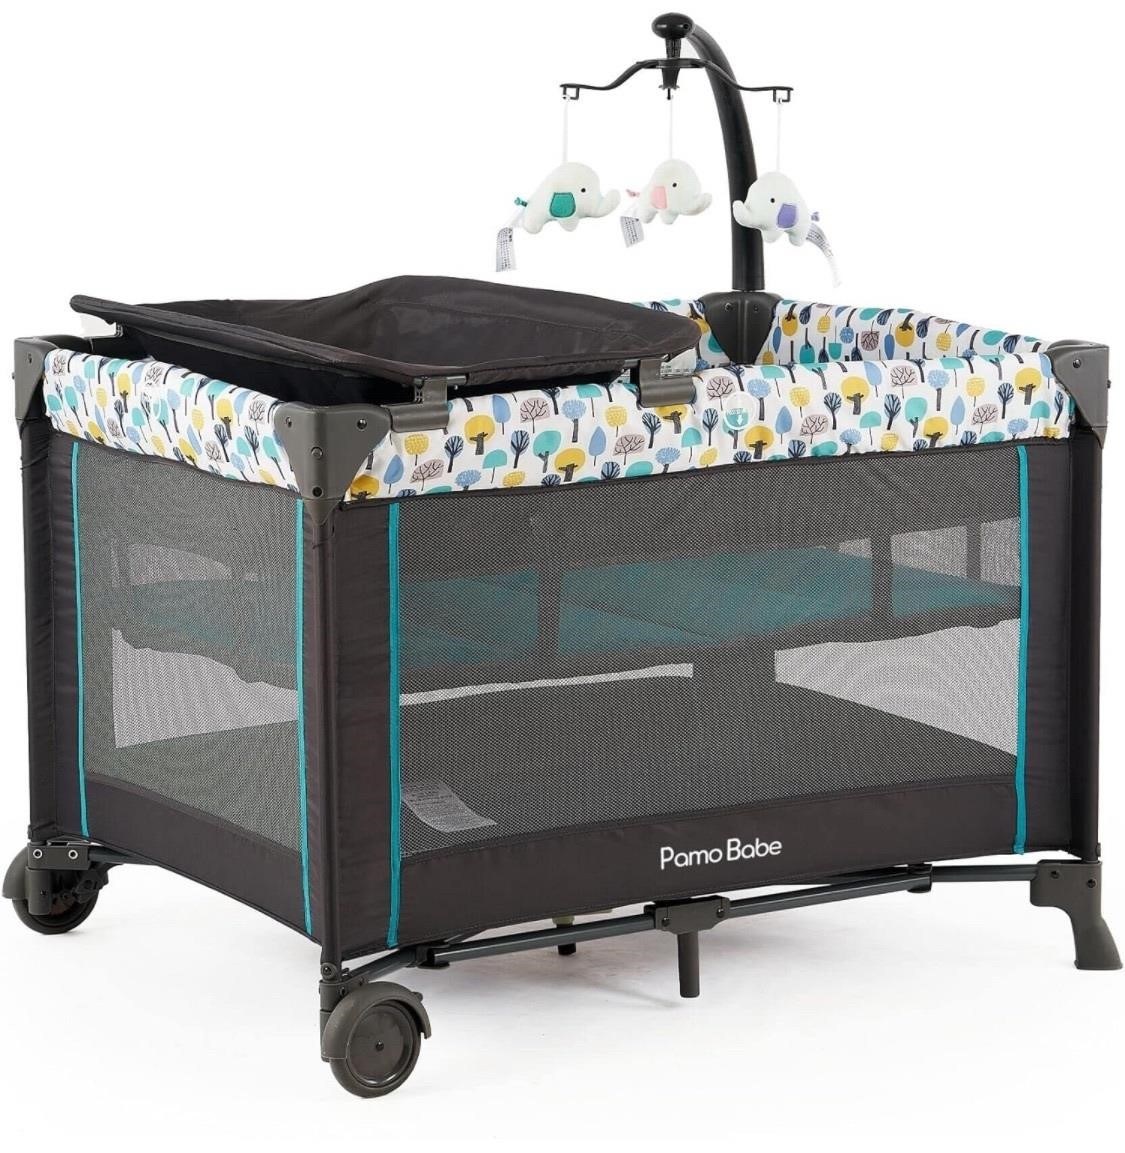 $99 Portable Crib for Baby, Portable